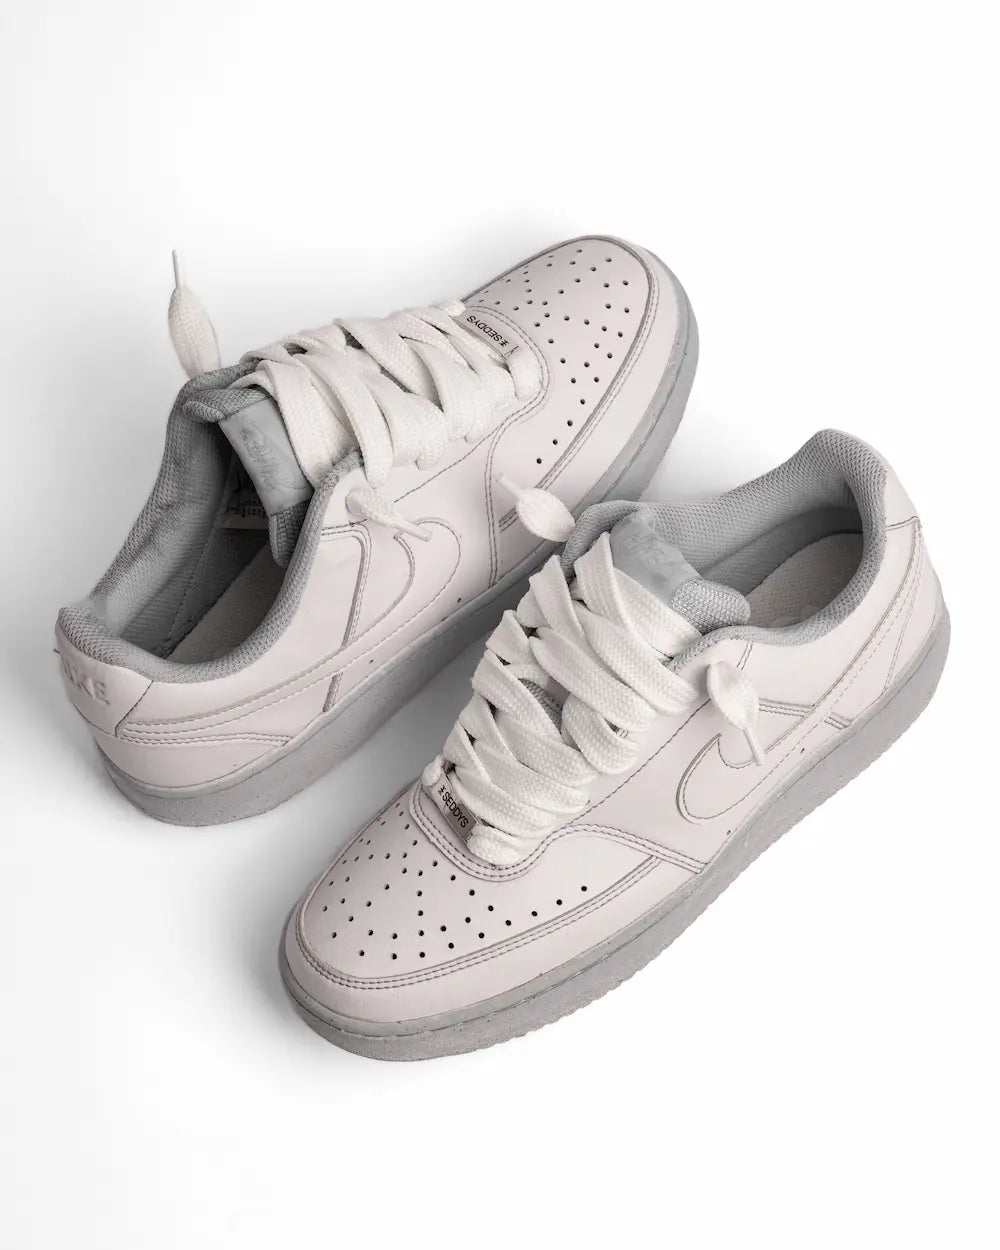 Nike Court Vision Dye Grey personalizzata in colore grigio chiaro